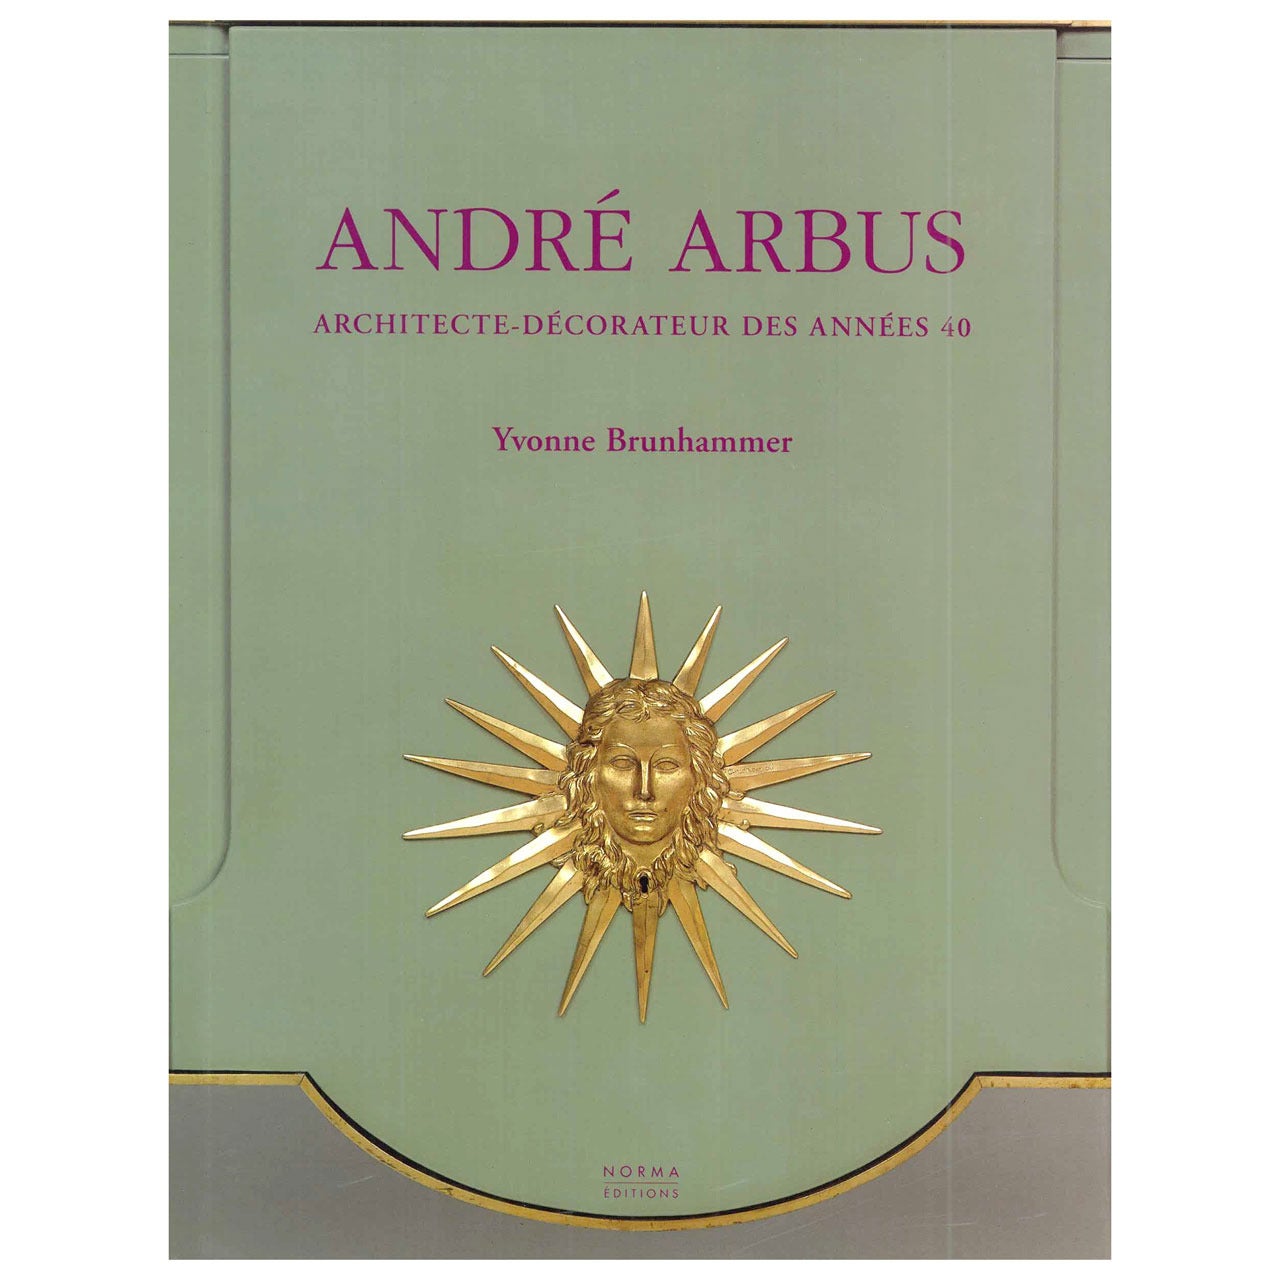 Andre Arbus: Architecte-Decorateur des Annees 40